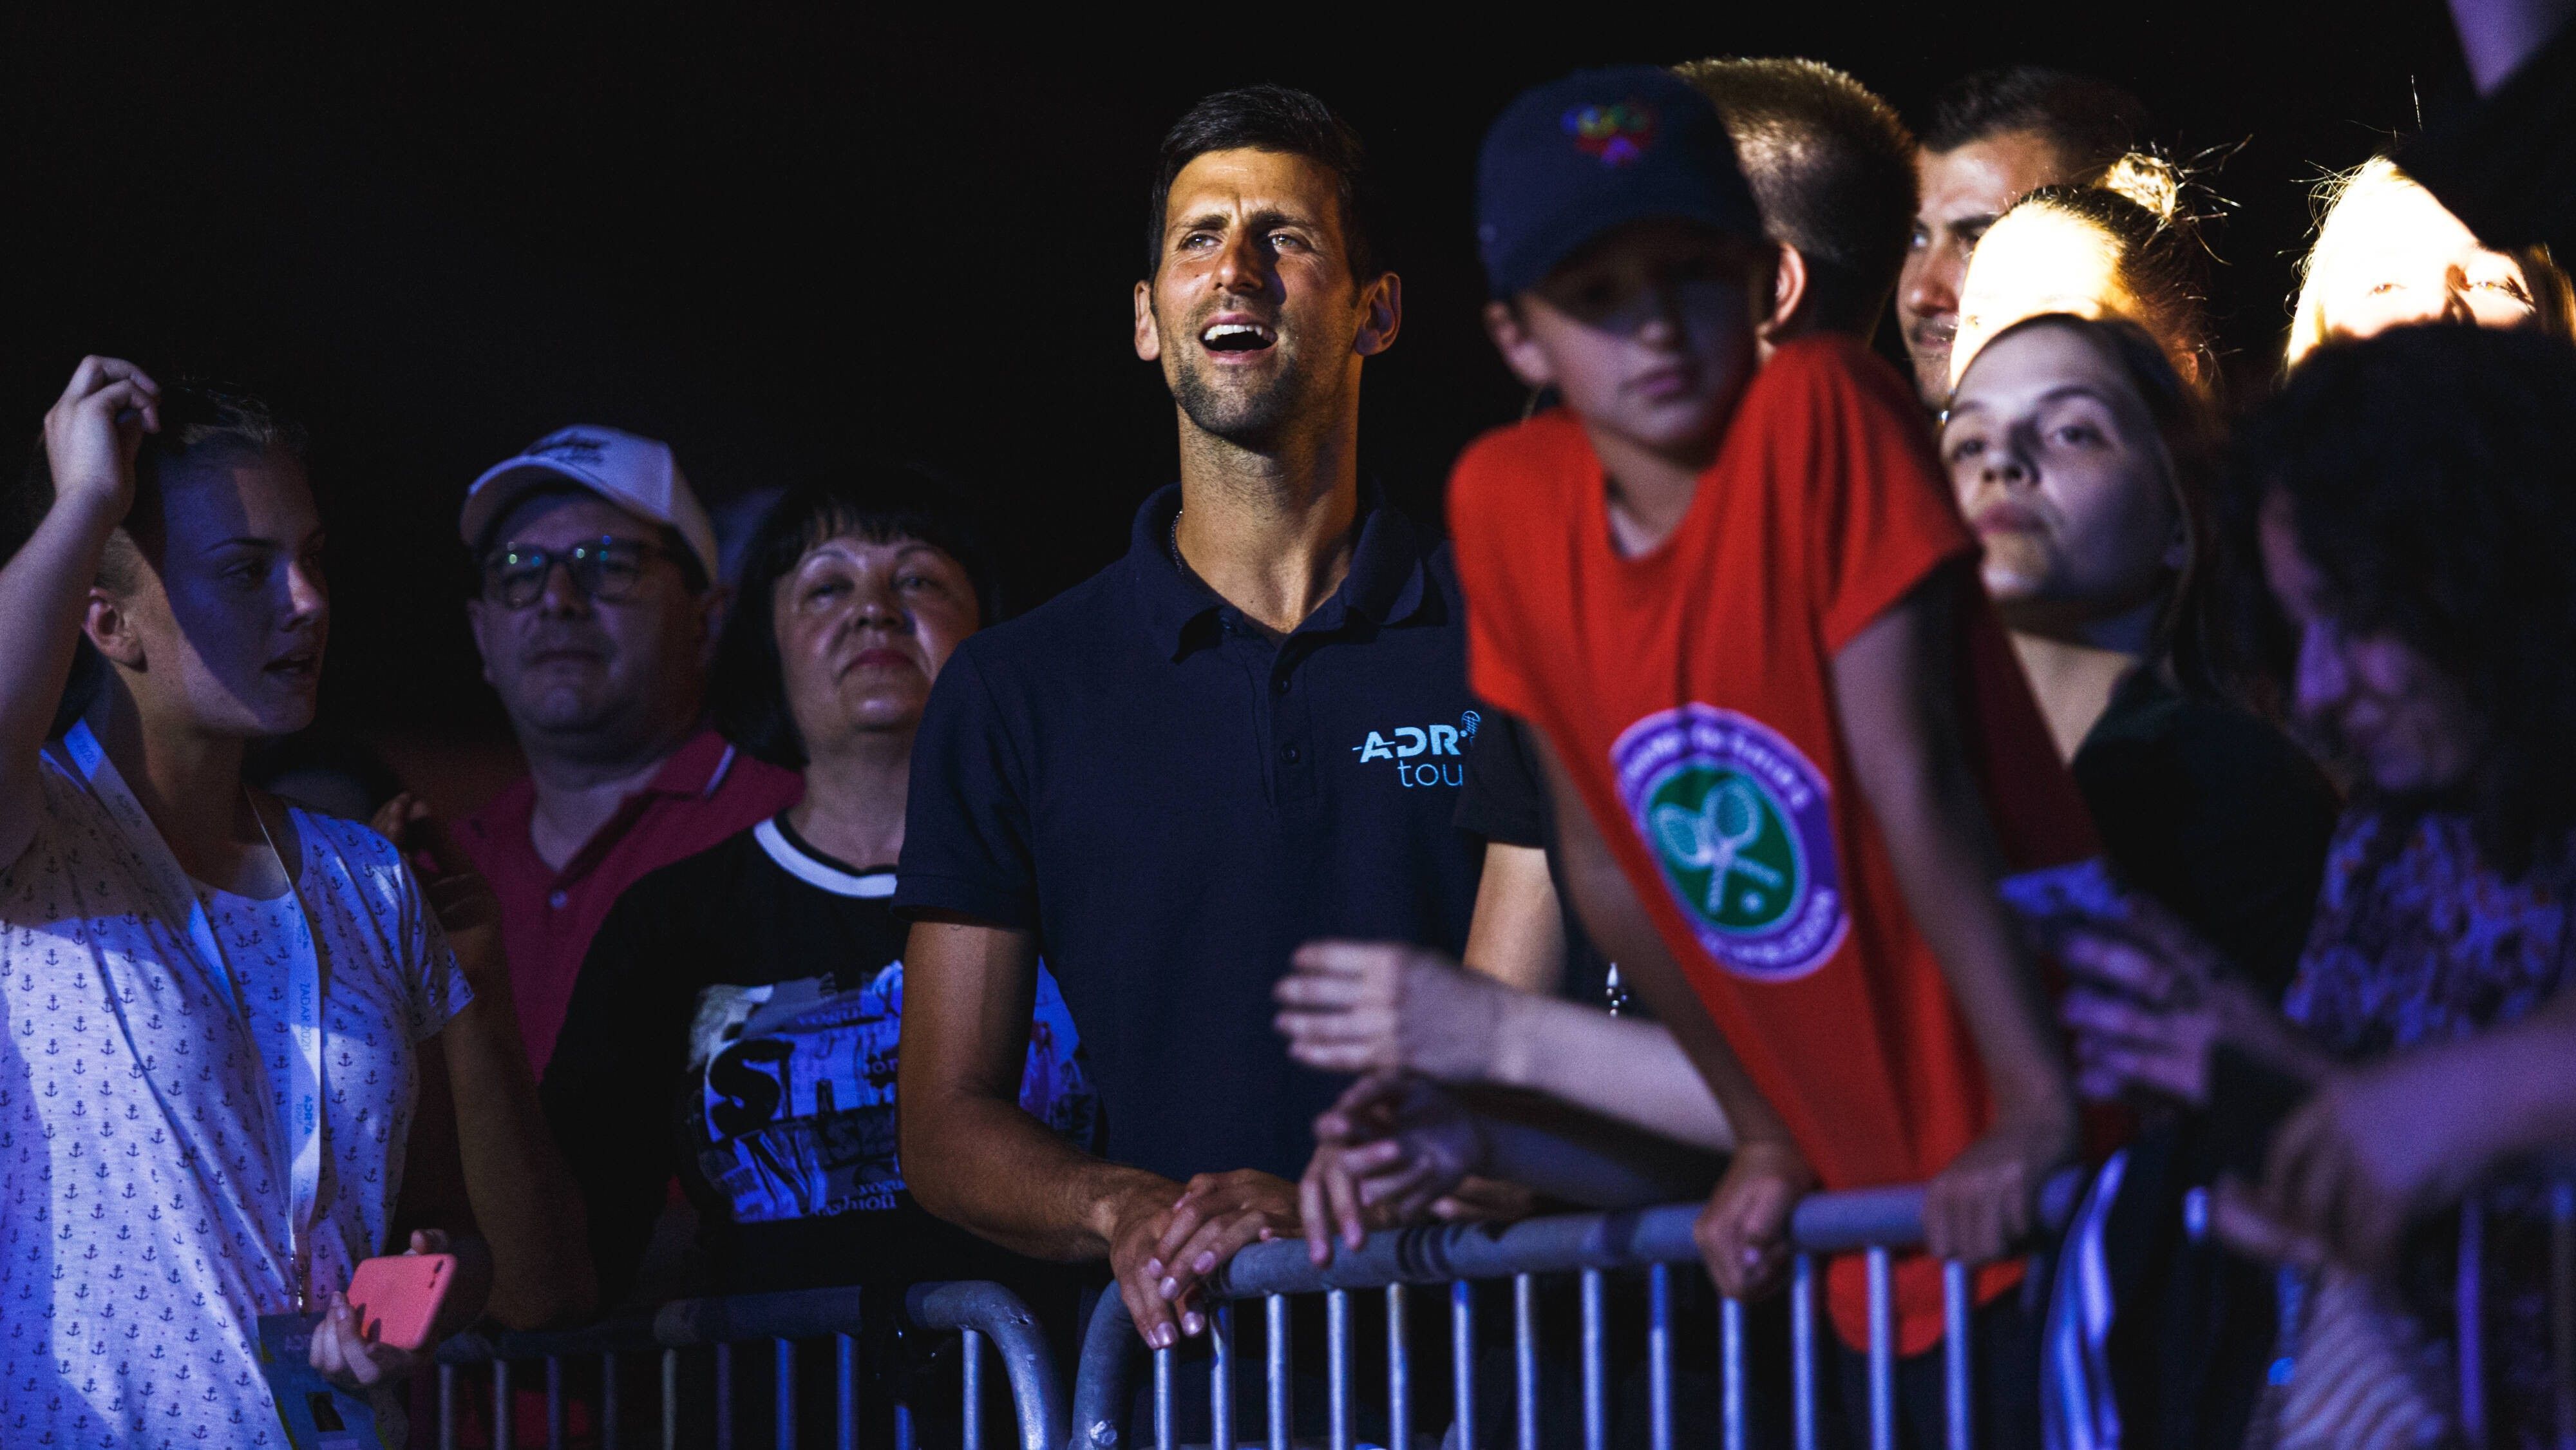 
                <strong>Djokovics Pandemie Open</strong><br>
                Dass Djokovic nicht immer mit der wissenschaftlich vorherrschenden Meinung einhergeht, ist spätestens seit der Adria Tour bekannt. Als die ATP-Turniere zu Beginn der Pandemie ruhten, stampfte Djokovic einfach selbst einen Wettbewerb aus dem Boden. Es wurde nicht nur Tennis gespielt, sondern auch gefeiert - ohne Abstände oder Masken. Einige Spieler und Trainer infizierten sich. Auch Djokovic und seine Frau.
              